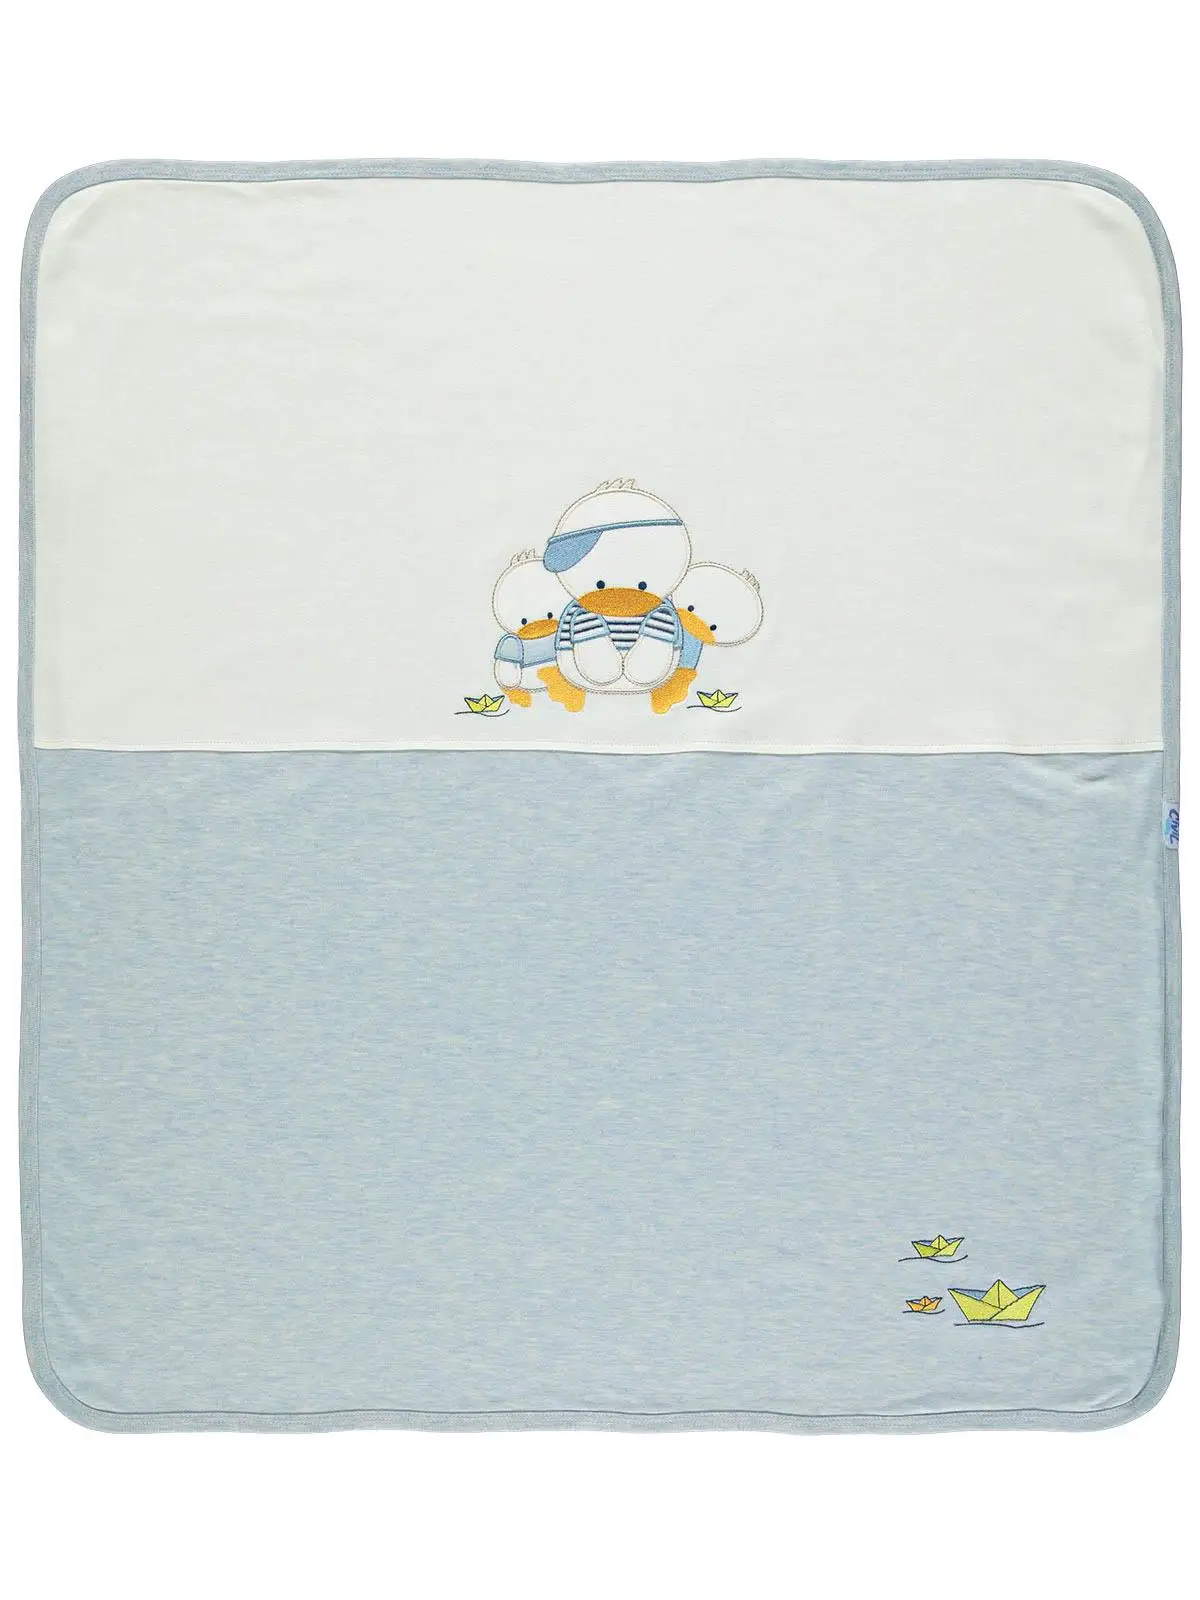 

Civil Baby Boy Combed Cotton Double Layer Blanket 80x90 cm Blue Color 100% Cotton